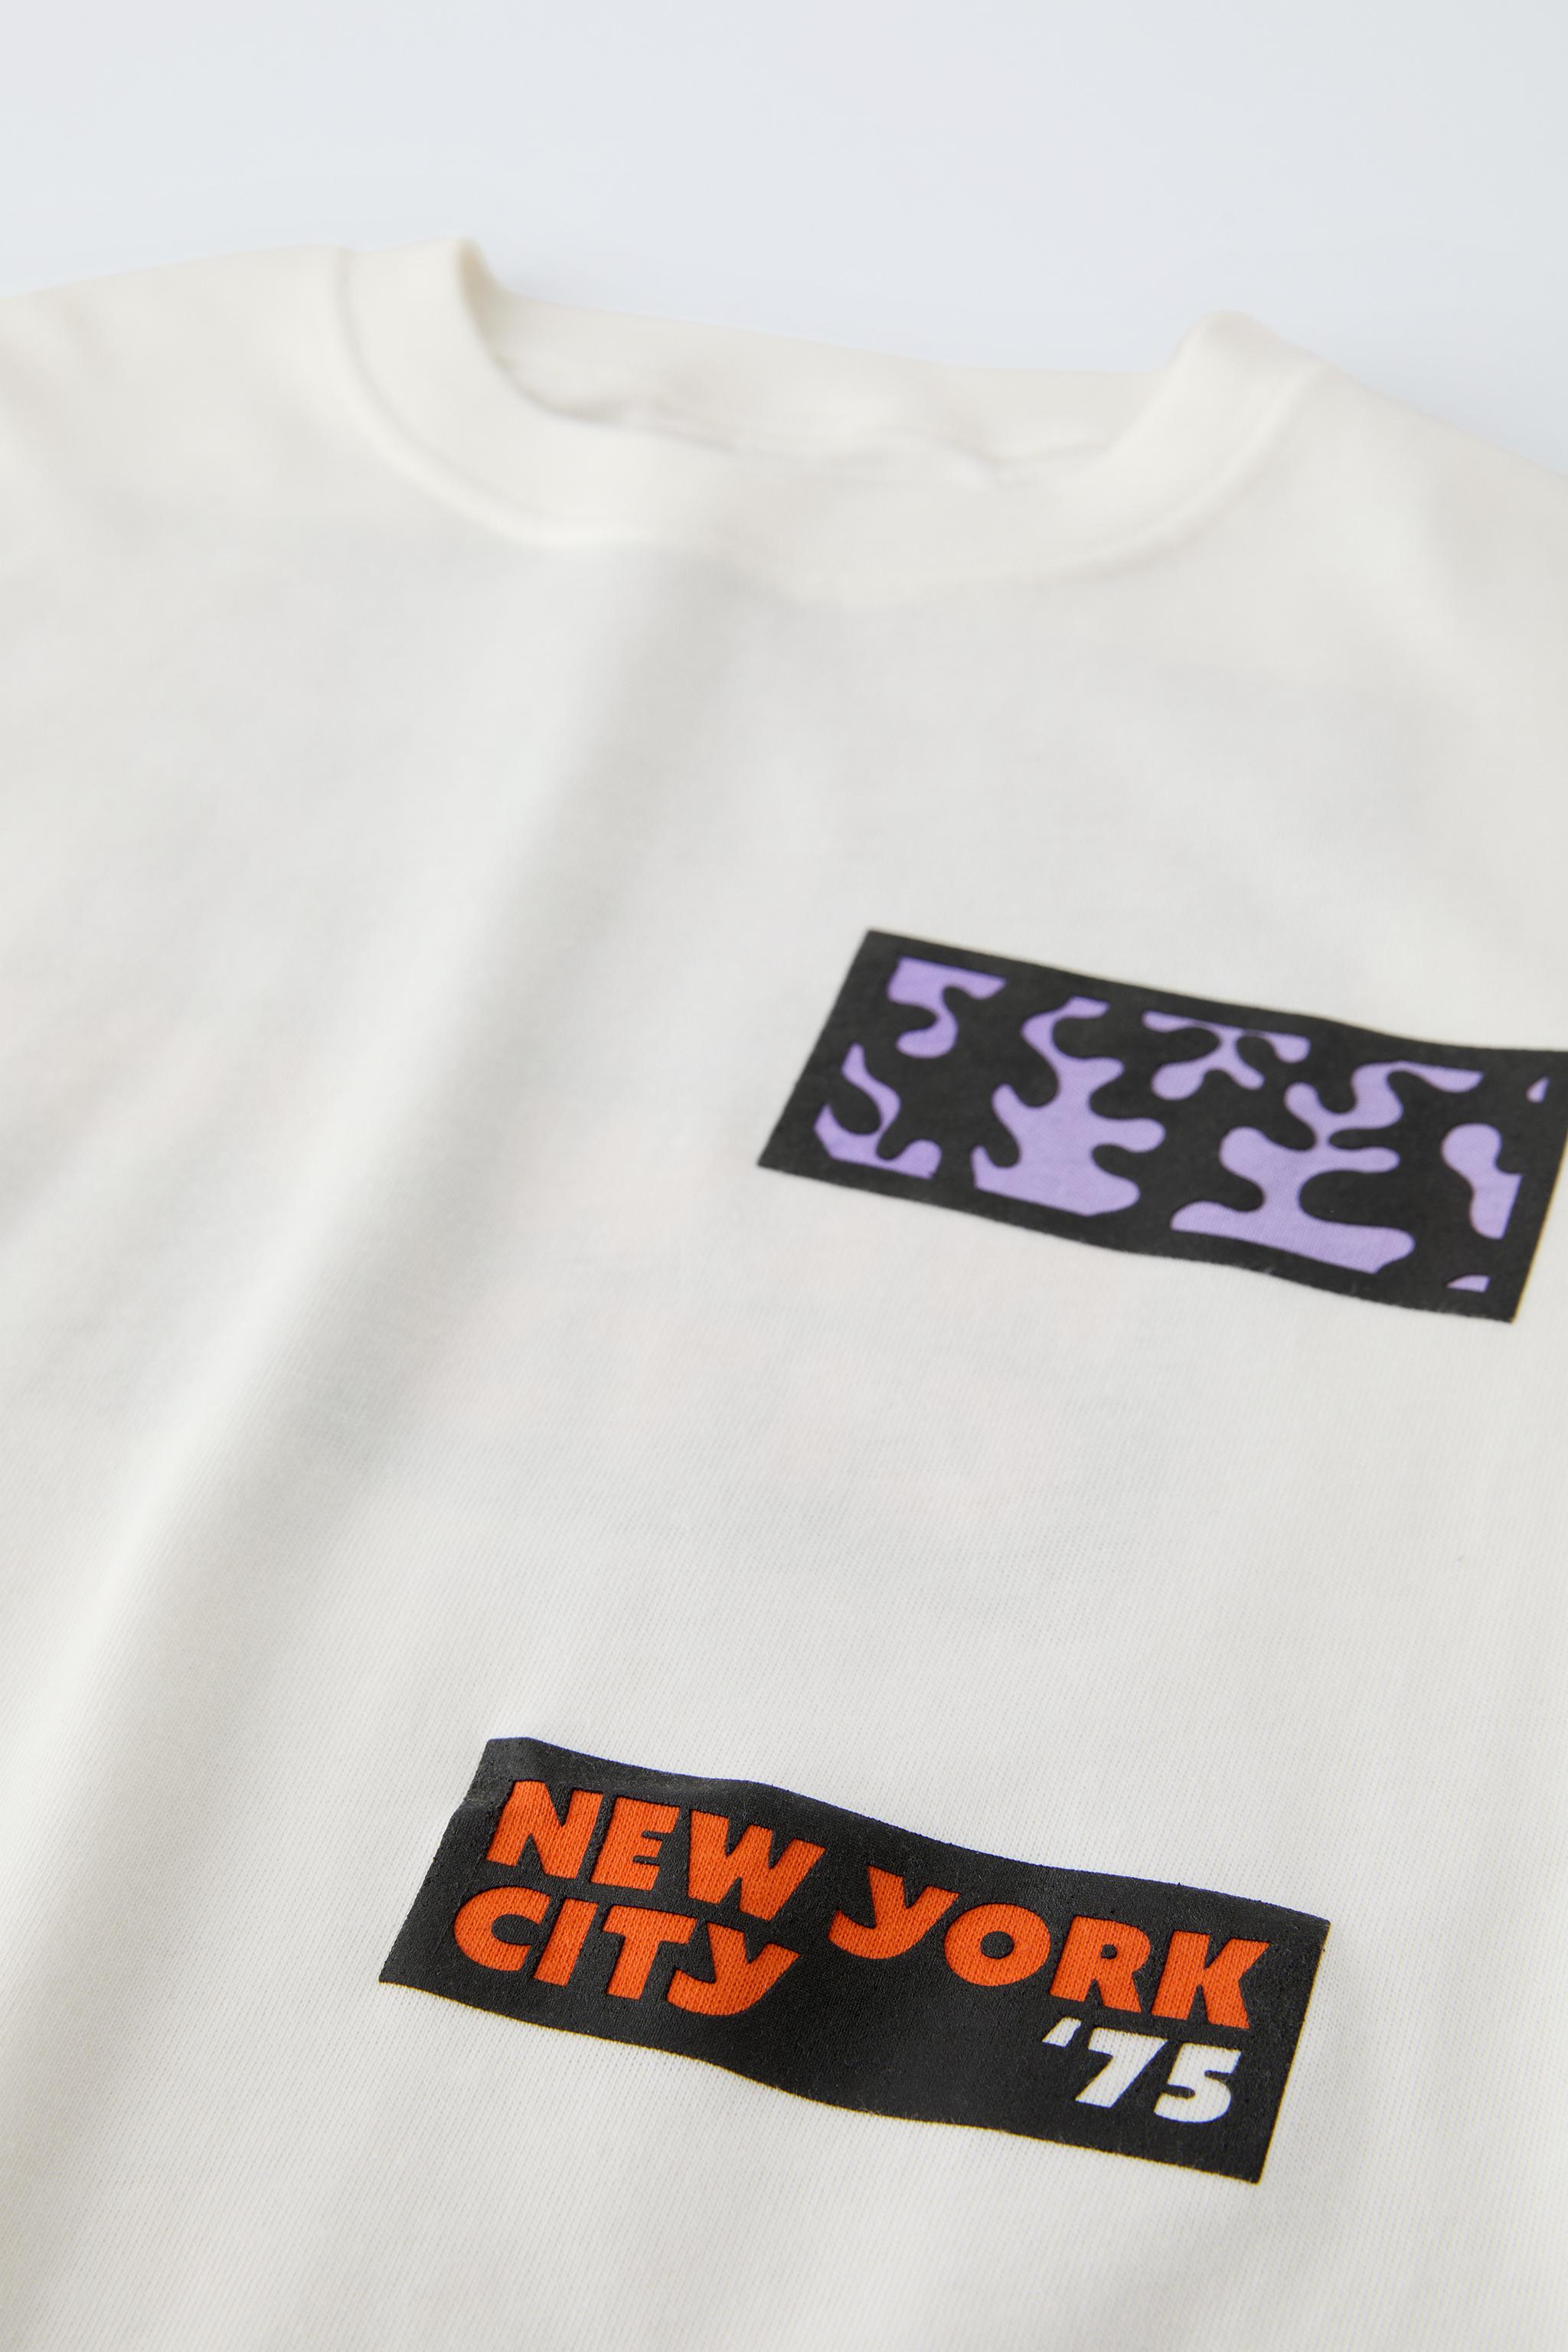 NEW YORK Tシャツ - オフホワイト | ZARA Japan / 日本